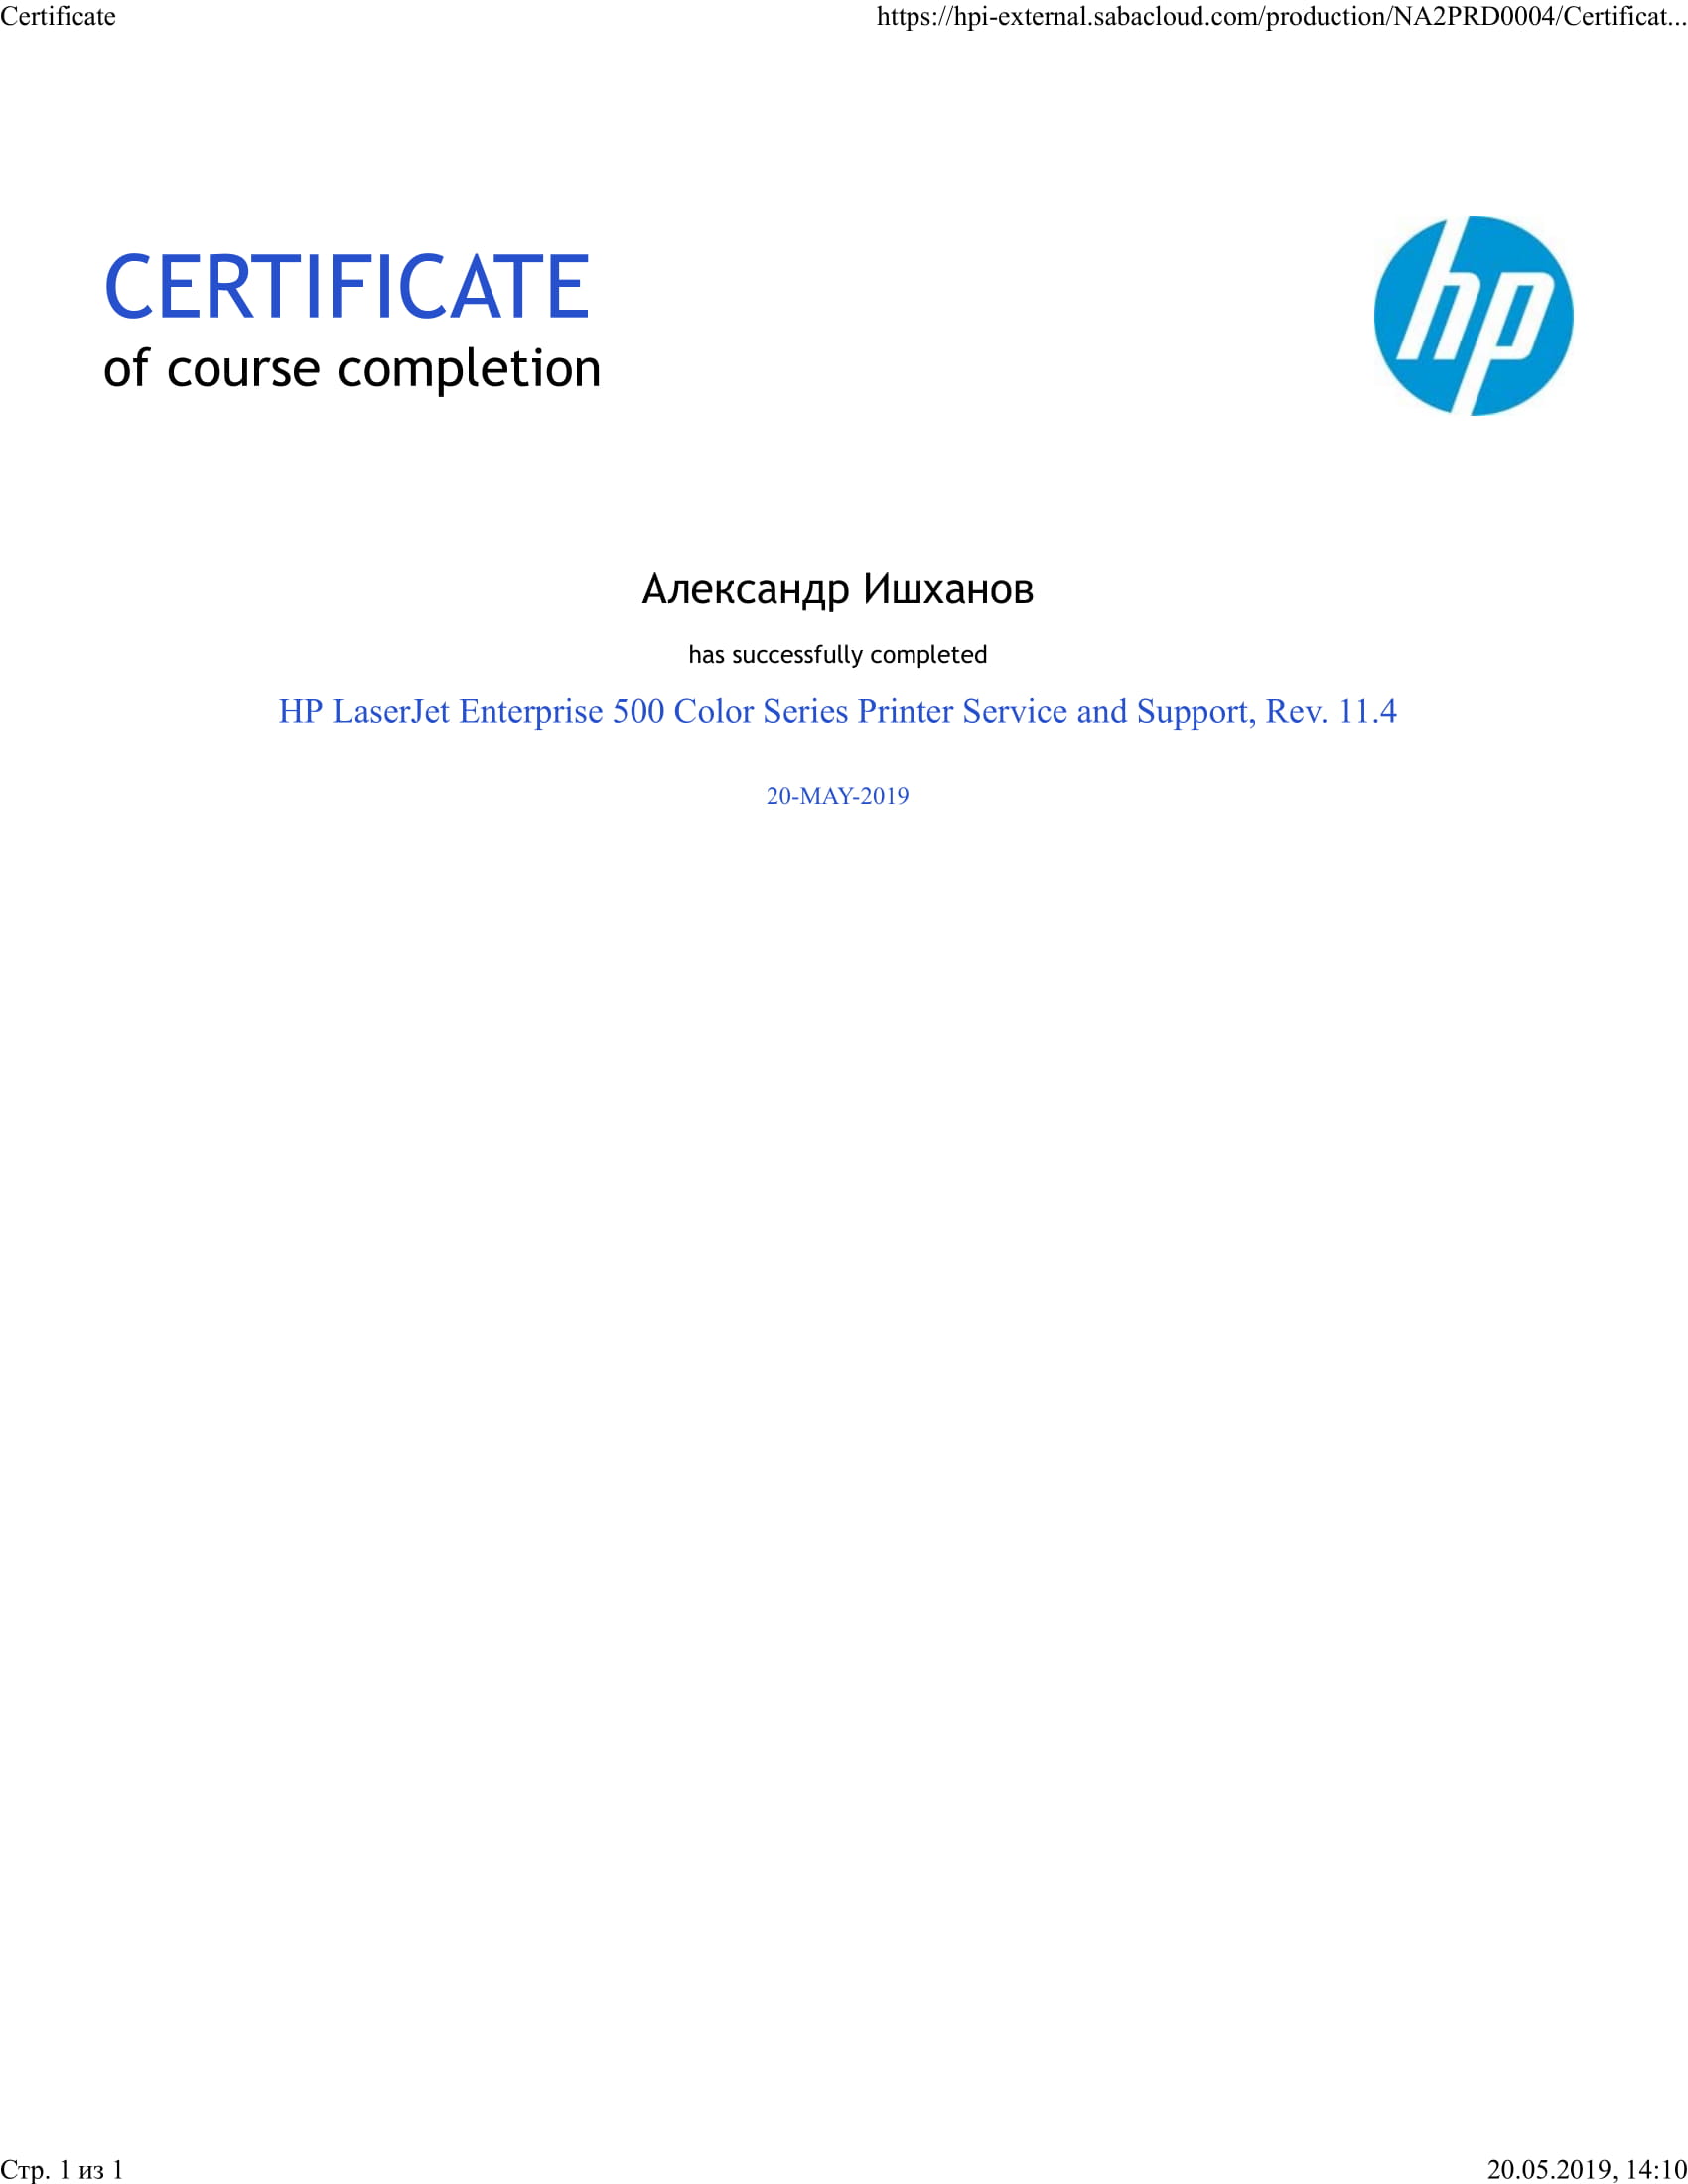 Александр Ишханов. Сертификат о прохождении курса HP Service and Support по модельной линейке принтеров HP LaserJet Enterprise 500 Color Series rev. 11.4